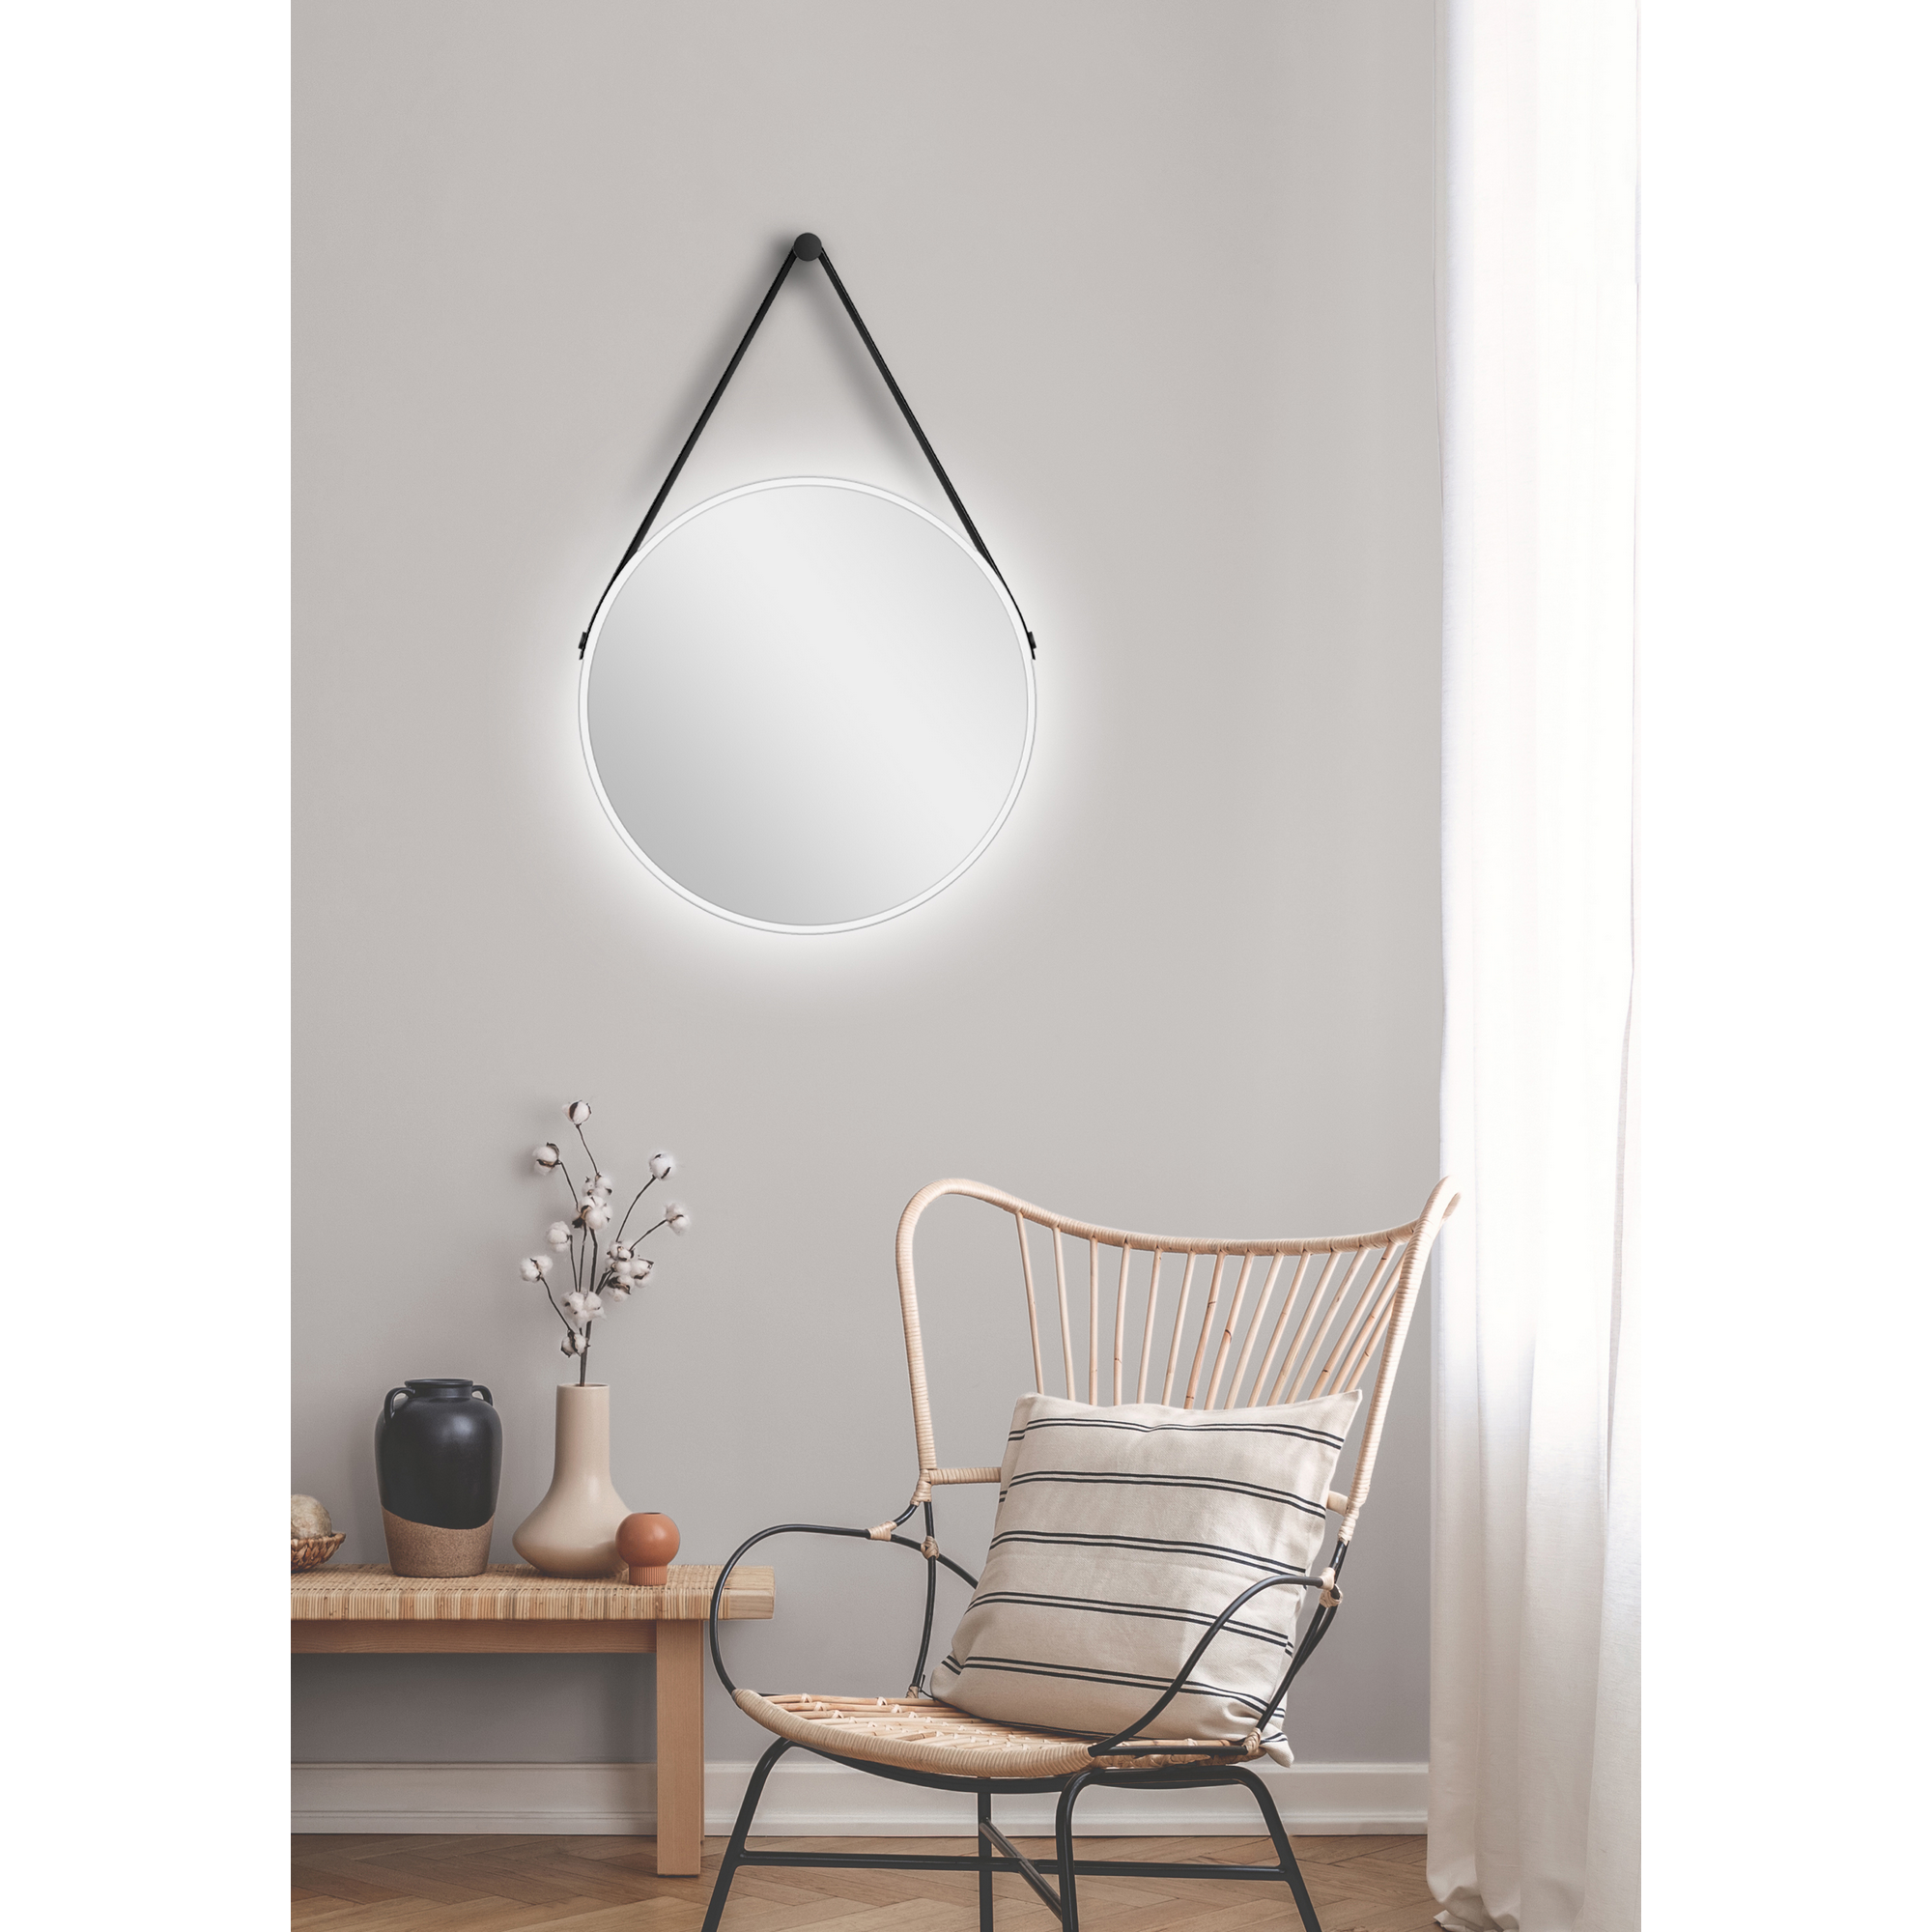 LED-Spiegel 'Silver Barbier' kupfer Ø 50 cm + product picture